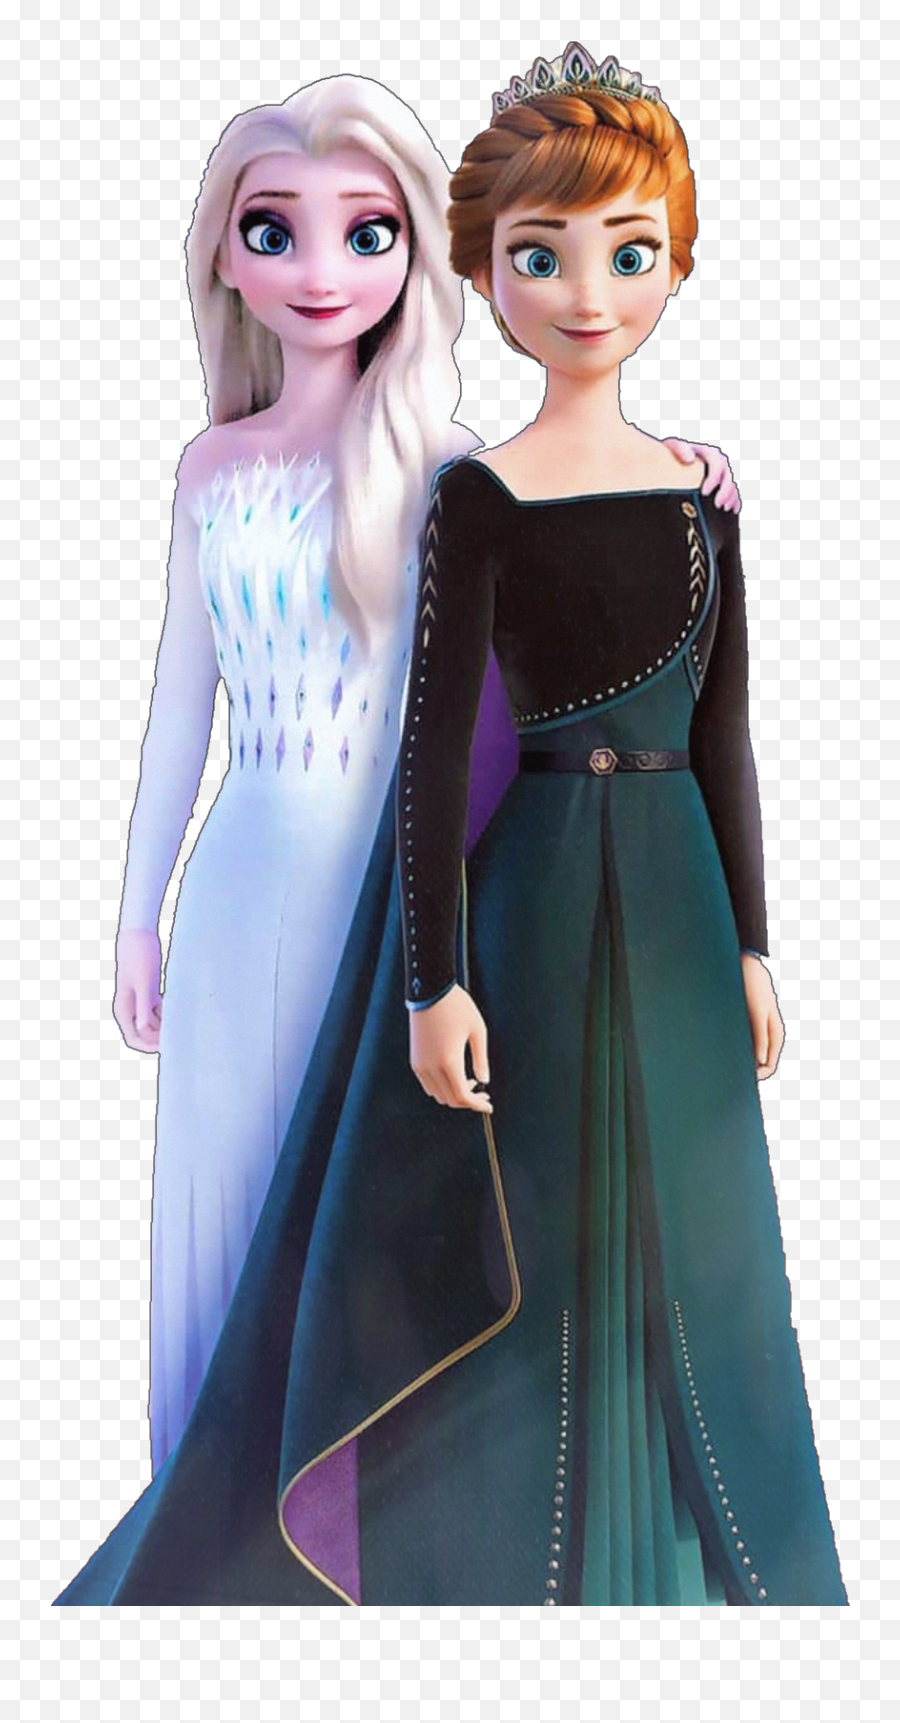 Elsa Anna Elsaandanna Frozen Frozen2 - Anna Frozen Elsa Png,Elsa Transparent